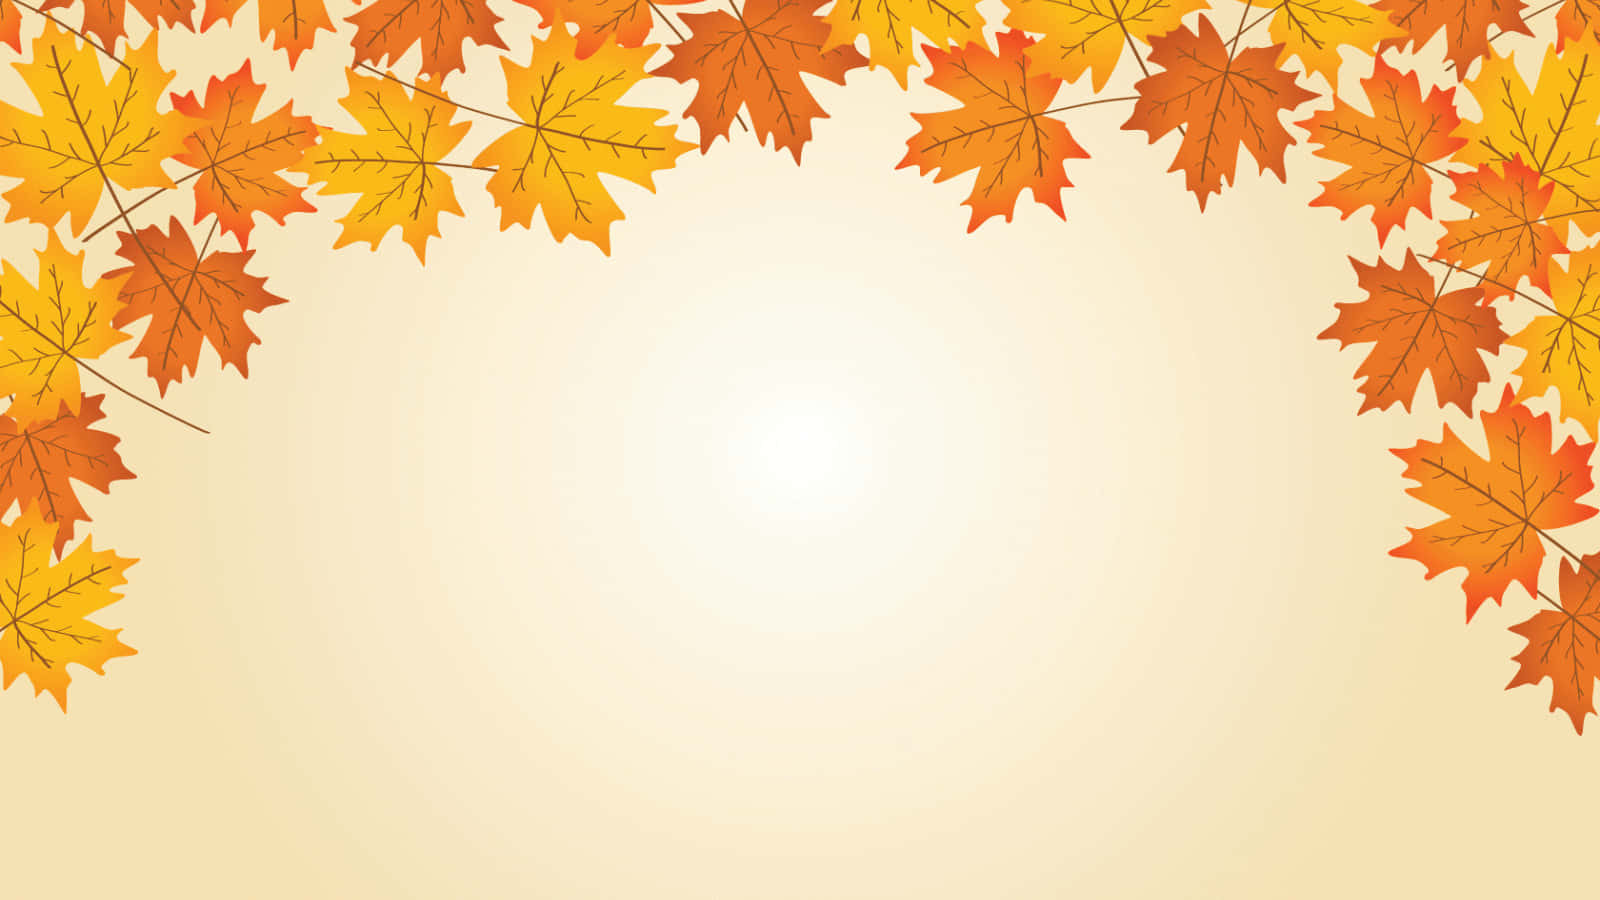 Celebrala Bellezza Dell'autunno Con Questa Adorabile Illustrazione Sfondo